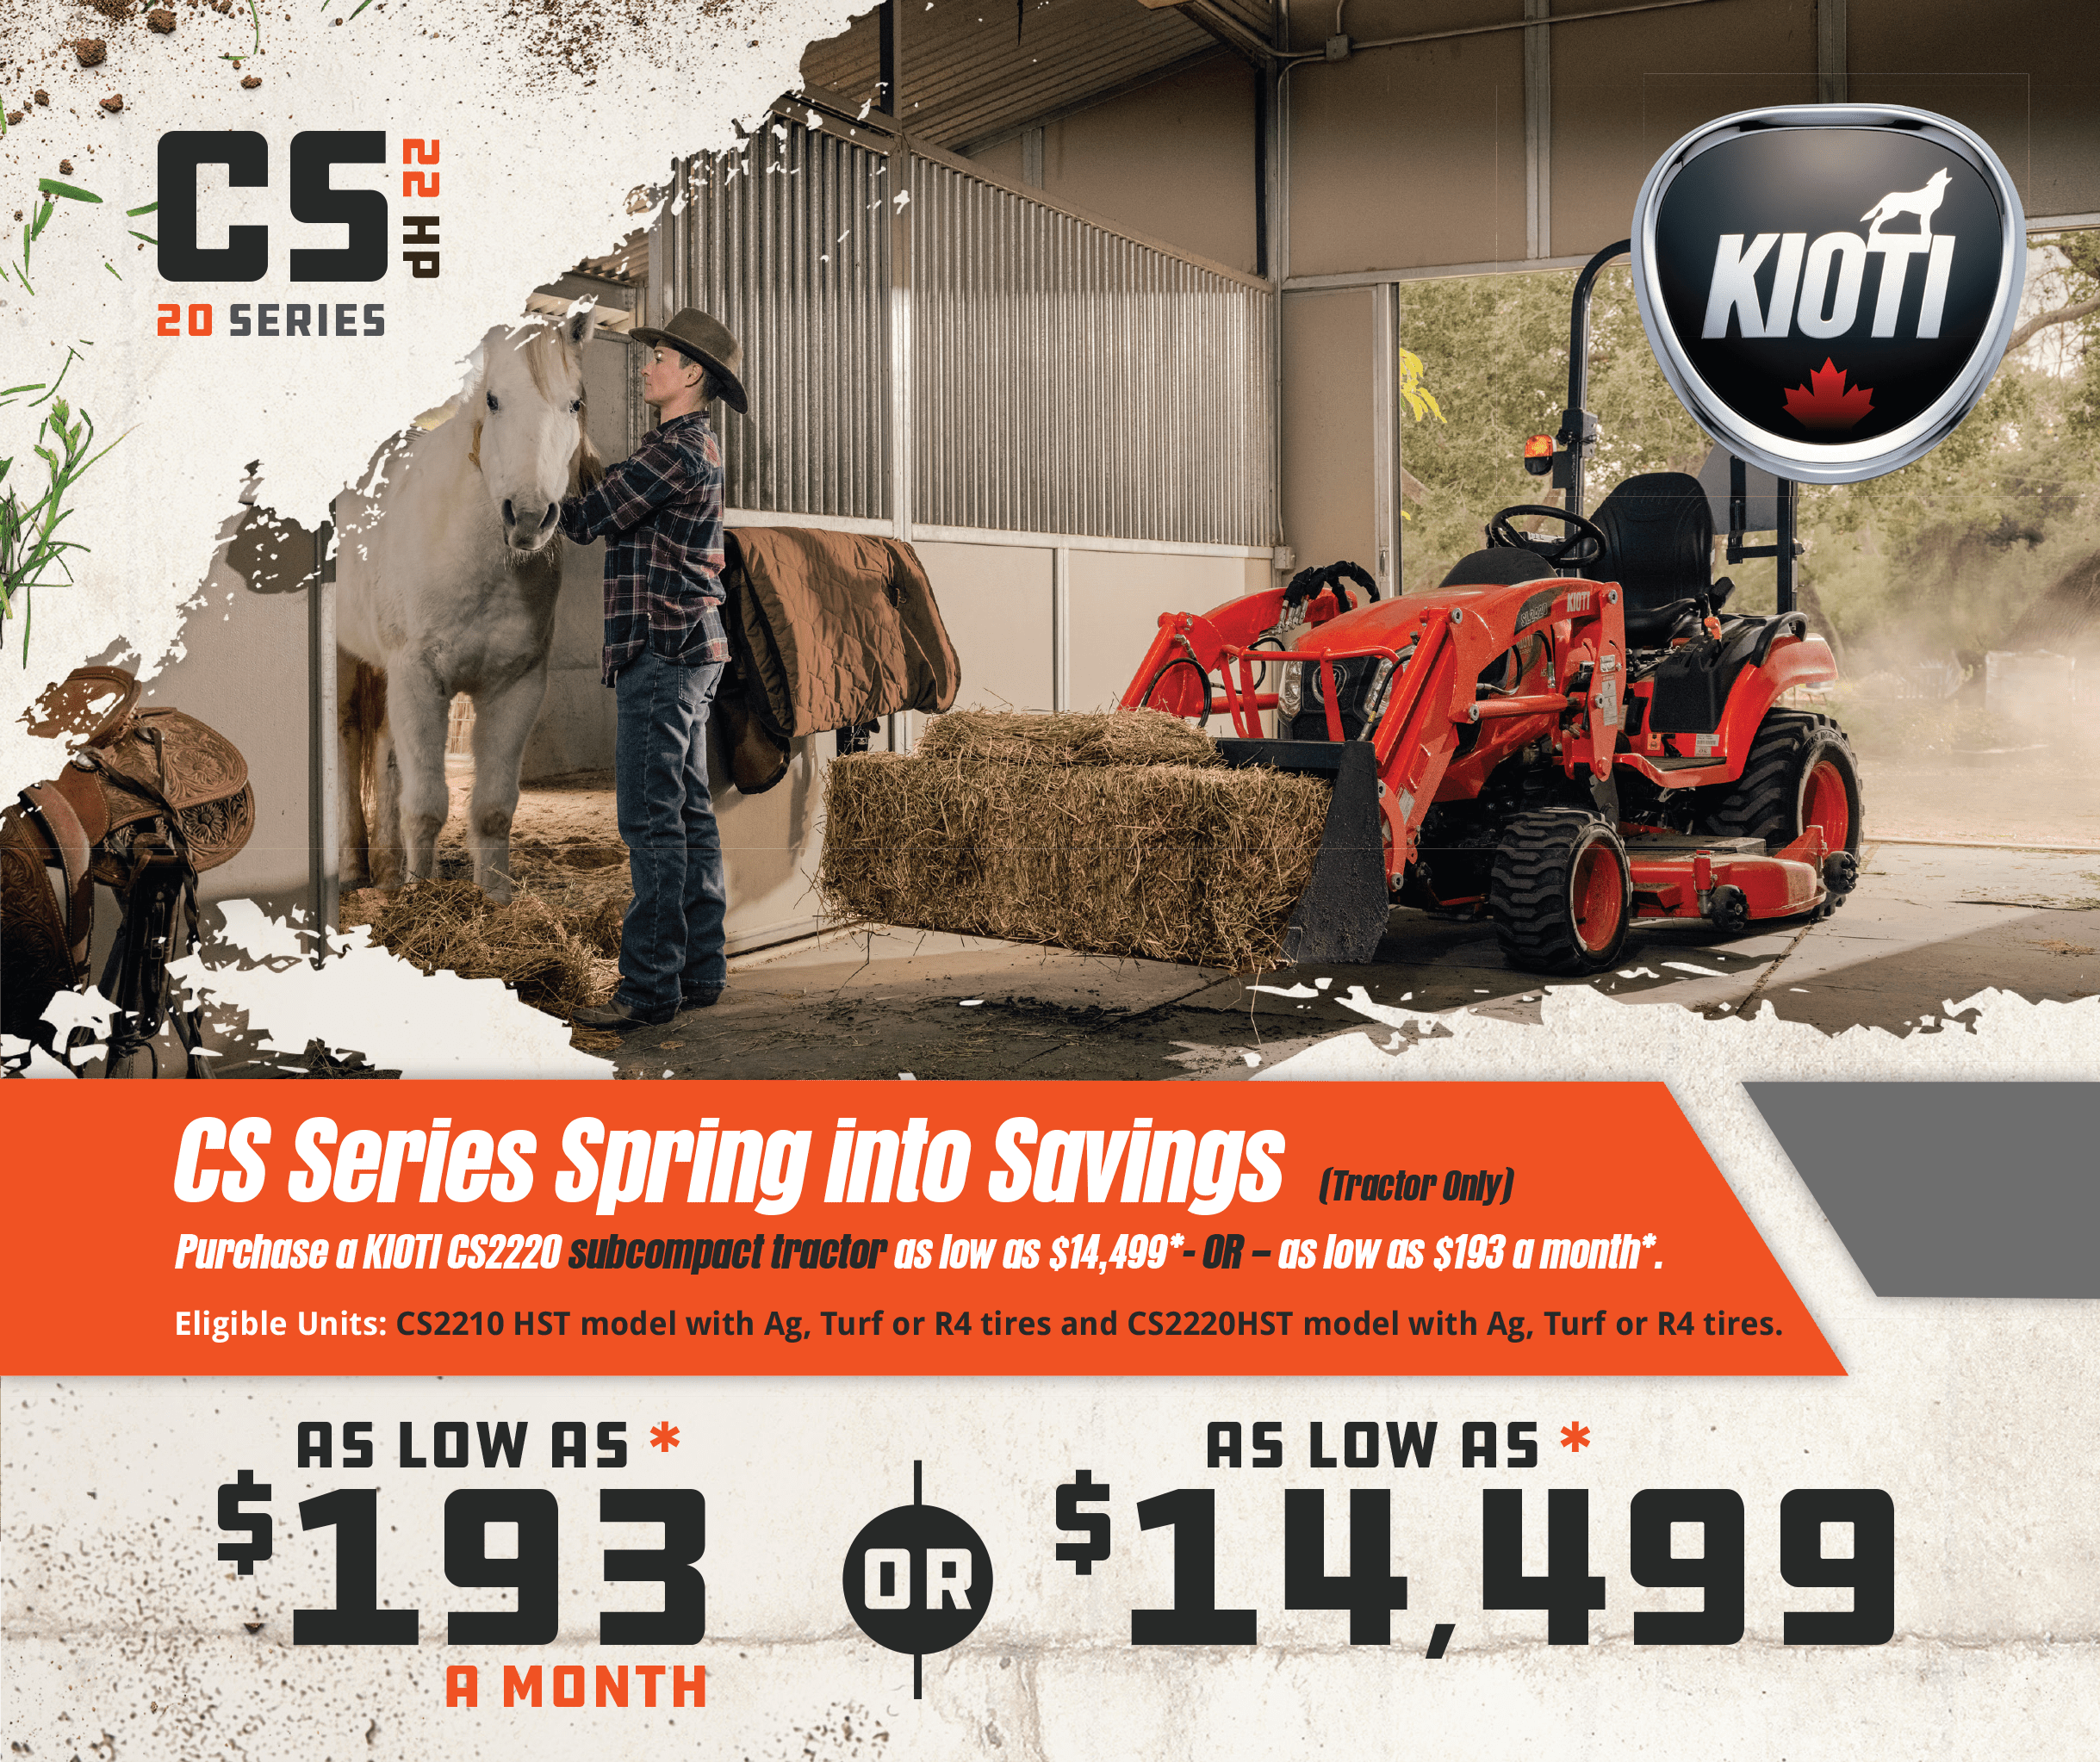 KIOTI CS Series Compact Tractor Spring Into Savings Promotion